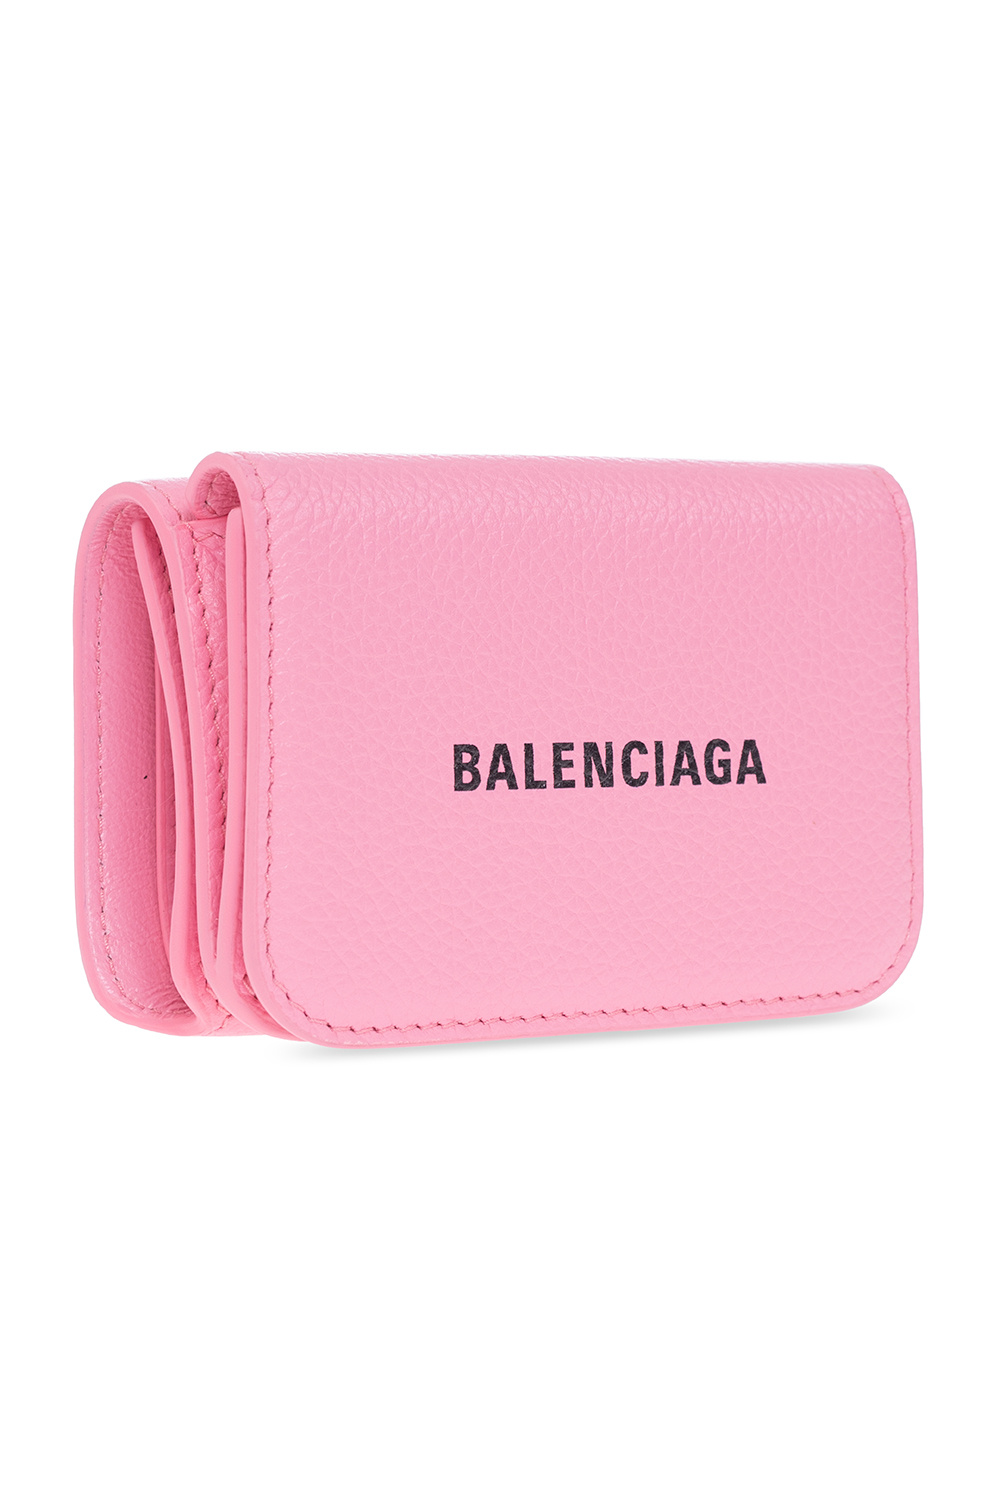 Balenciaga Wallet with logo | Accessories |